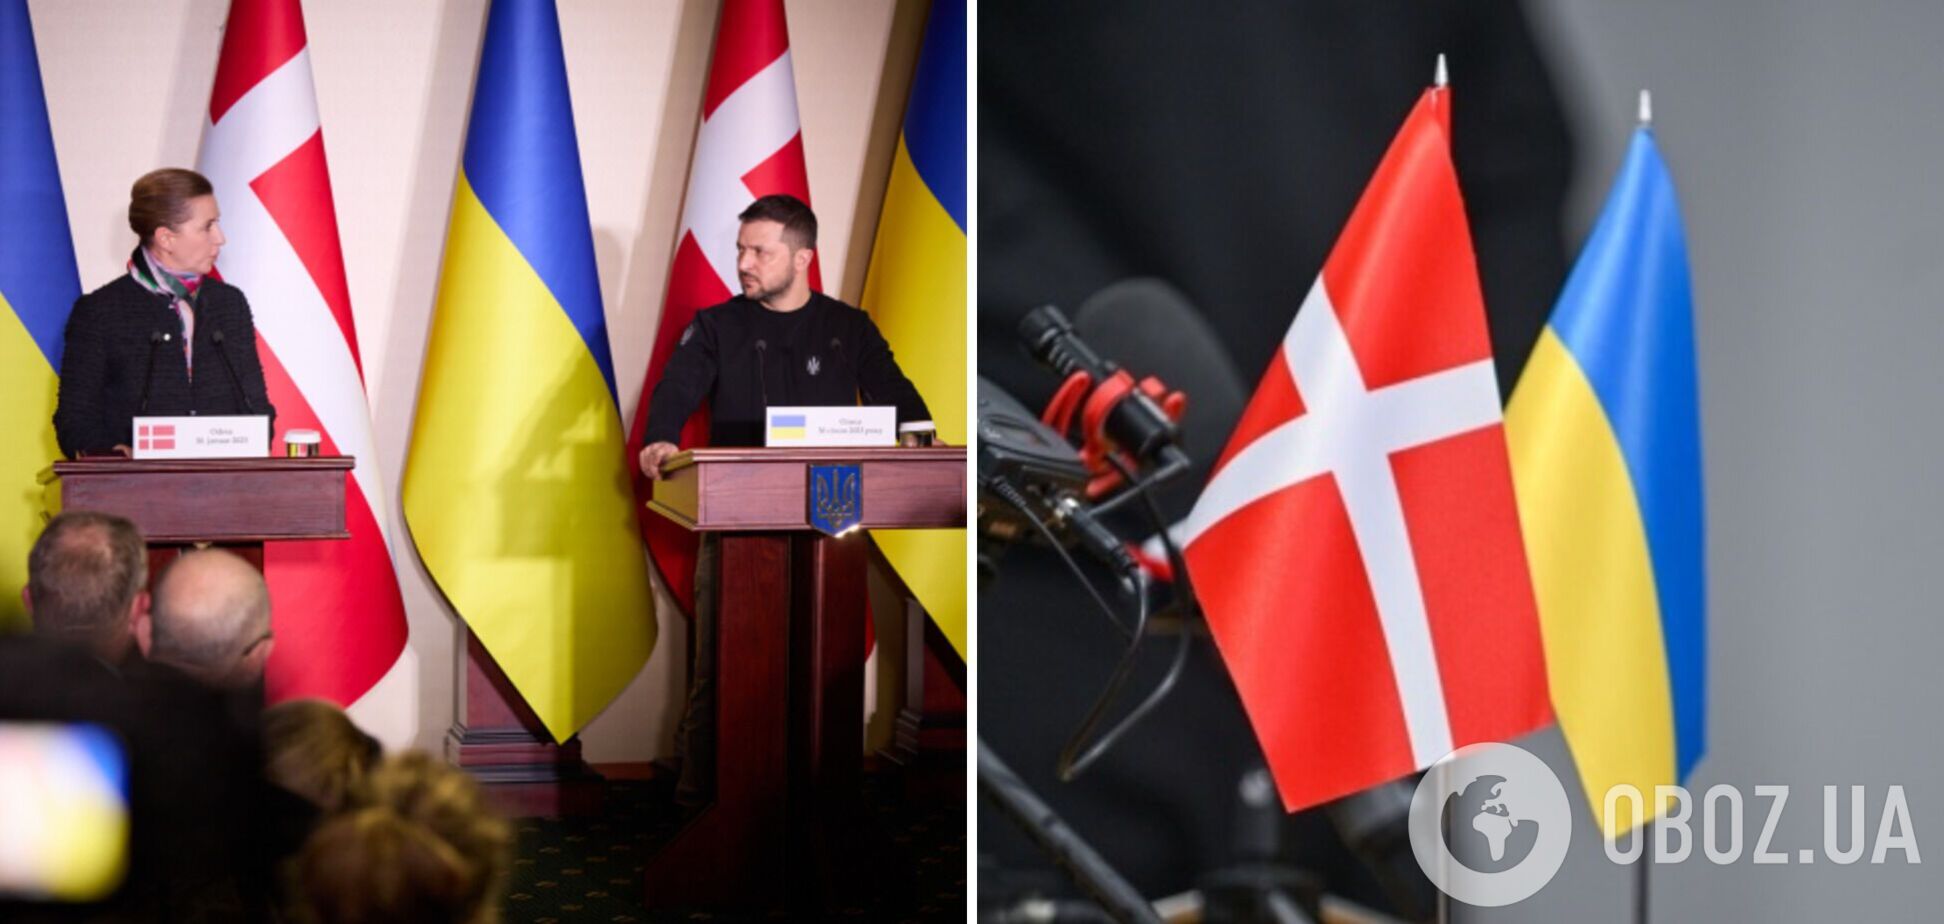 Данія надасть Україні новий пакет військової допомоги на суму майже $250 млн: також укладено безпекову угоду